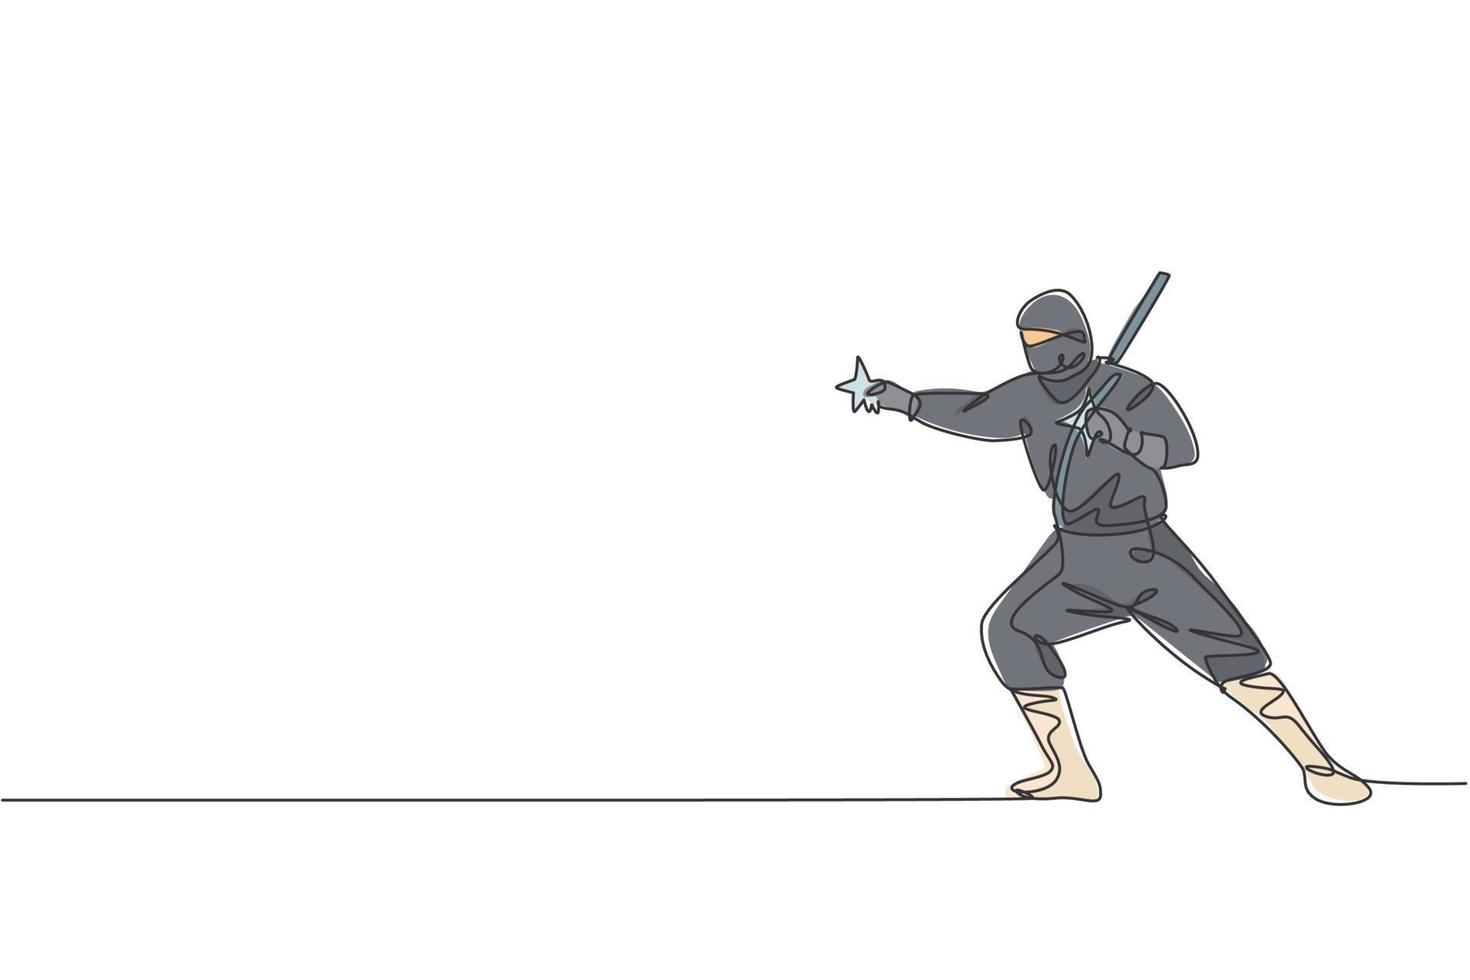 eine durchgehende strichzeichnung eines jungen tapferen japanischen ninja-charakters auf schwarzem kostüm mit angriffsposition. Kampfkunst-Kampfkonzept. dynamische einzeilige zeichnen design vektorgrafik illustration vektor